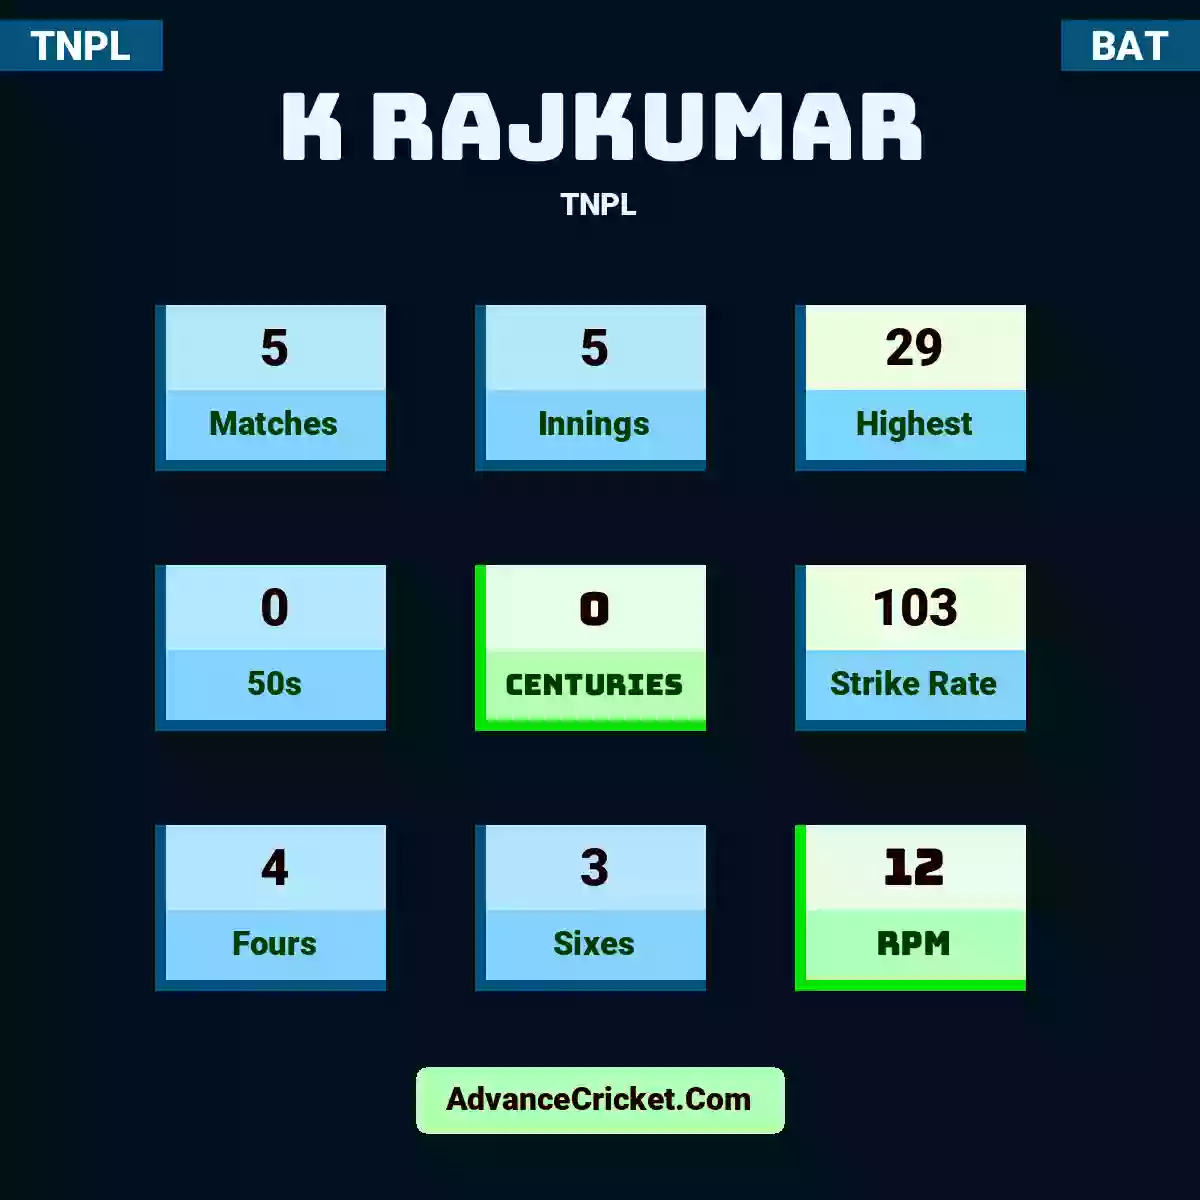 K Rajkumar TNPL , K Rajkumar played 5 matches, scored 29 runs as highest, 0 half-centuries, and 0 centuries, with a strike rate of 103. K.Rajkumar hit 4 fours and 3 sixes, with an RPM of 12.